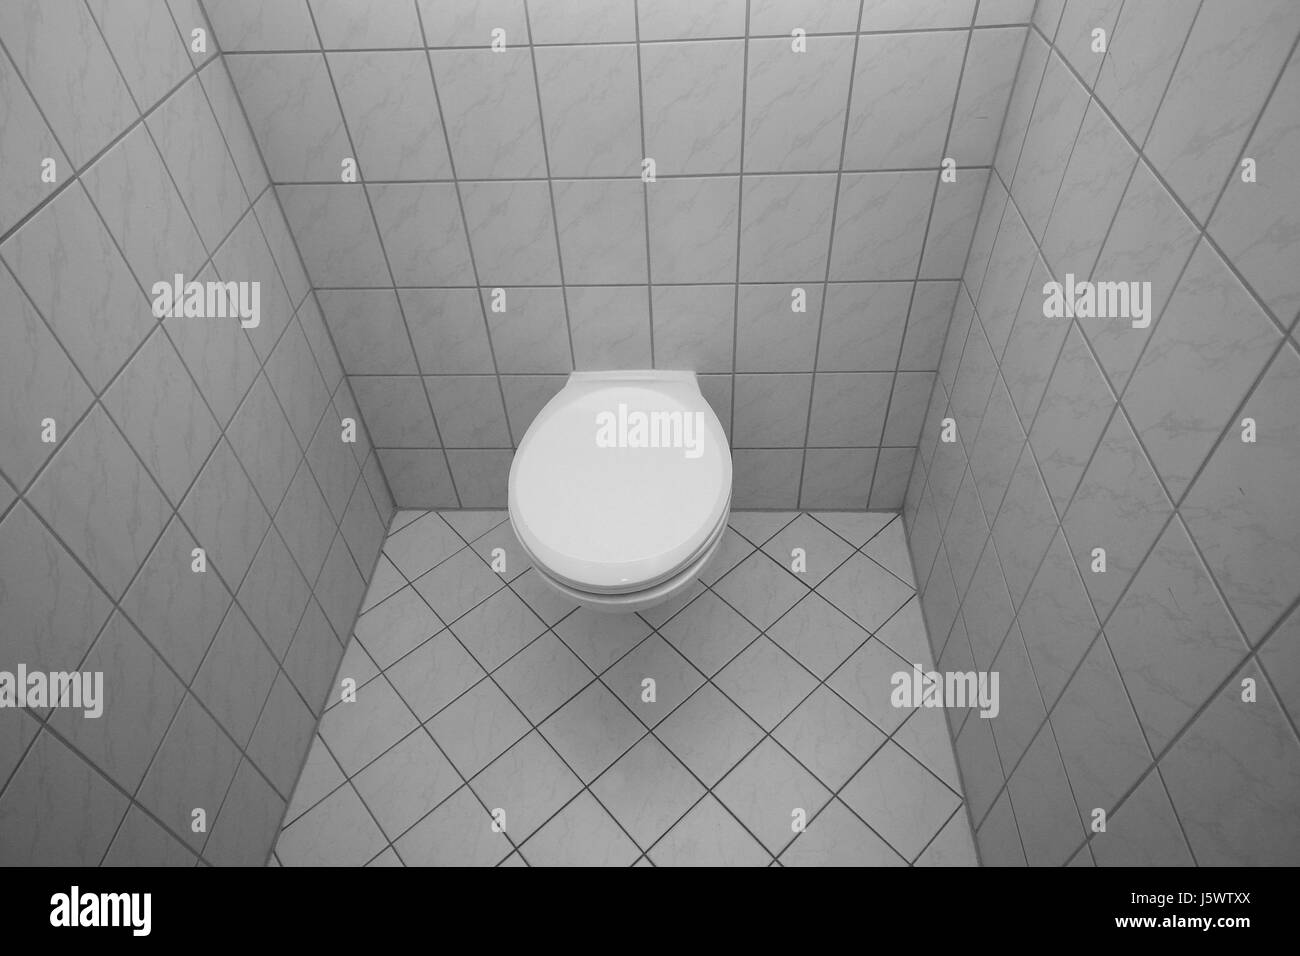 toilet flow ceramic tiles toilet paving tiles toilets rinsing toilet seat Stock Photo